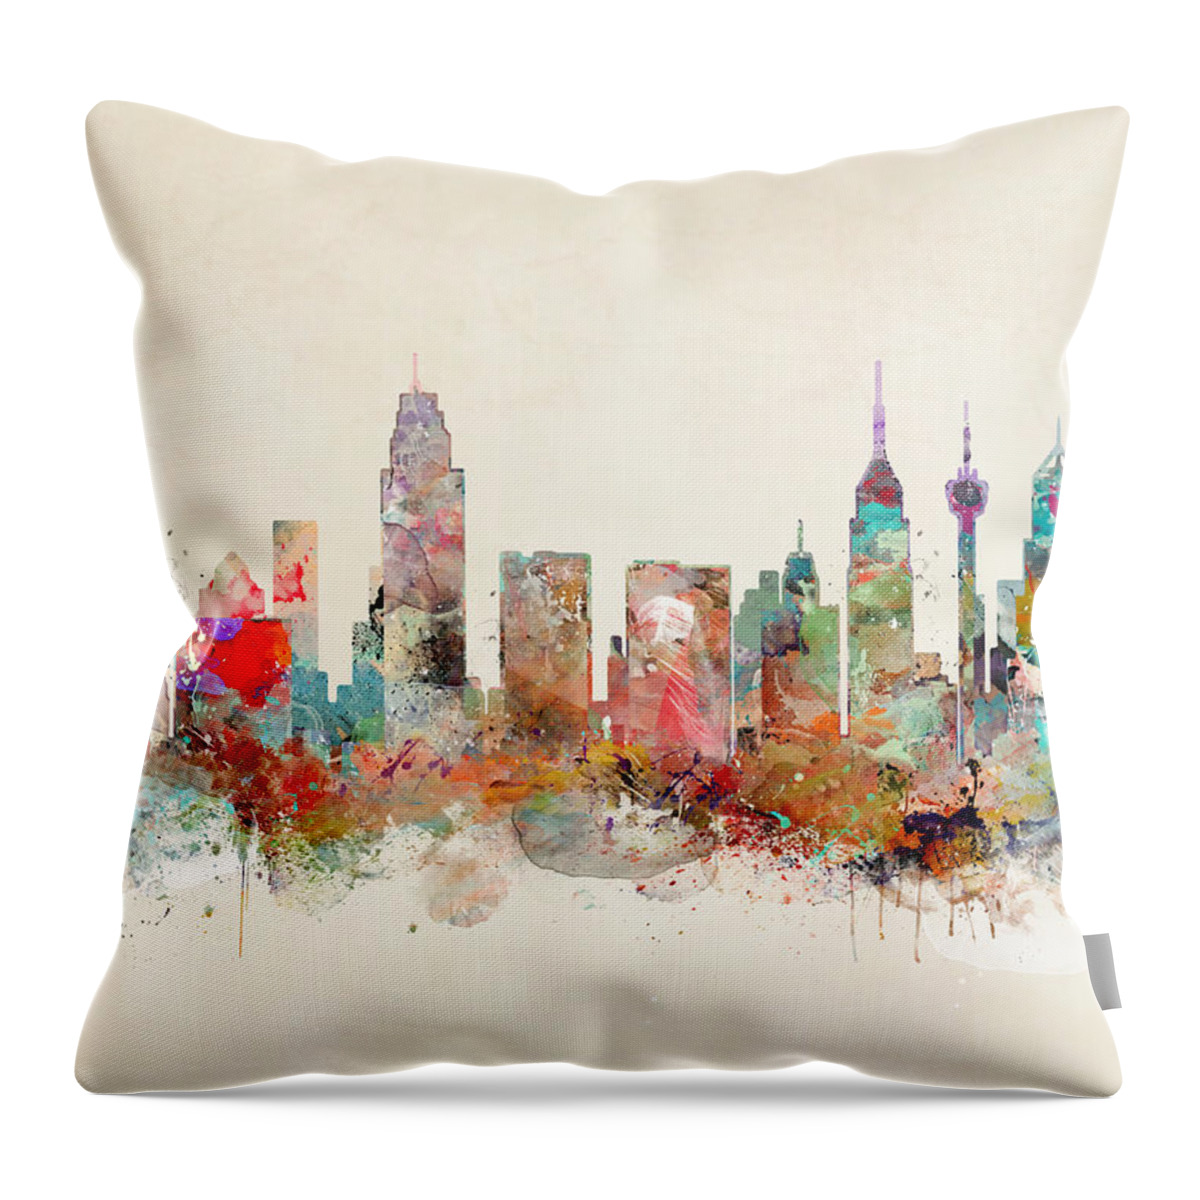 San Antonio Throw Pillow featuring the painting San Antonio Skyline by Bri Buckley